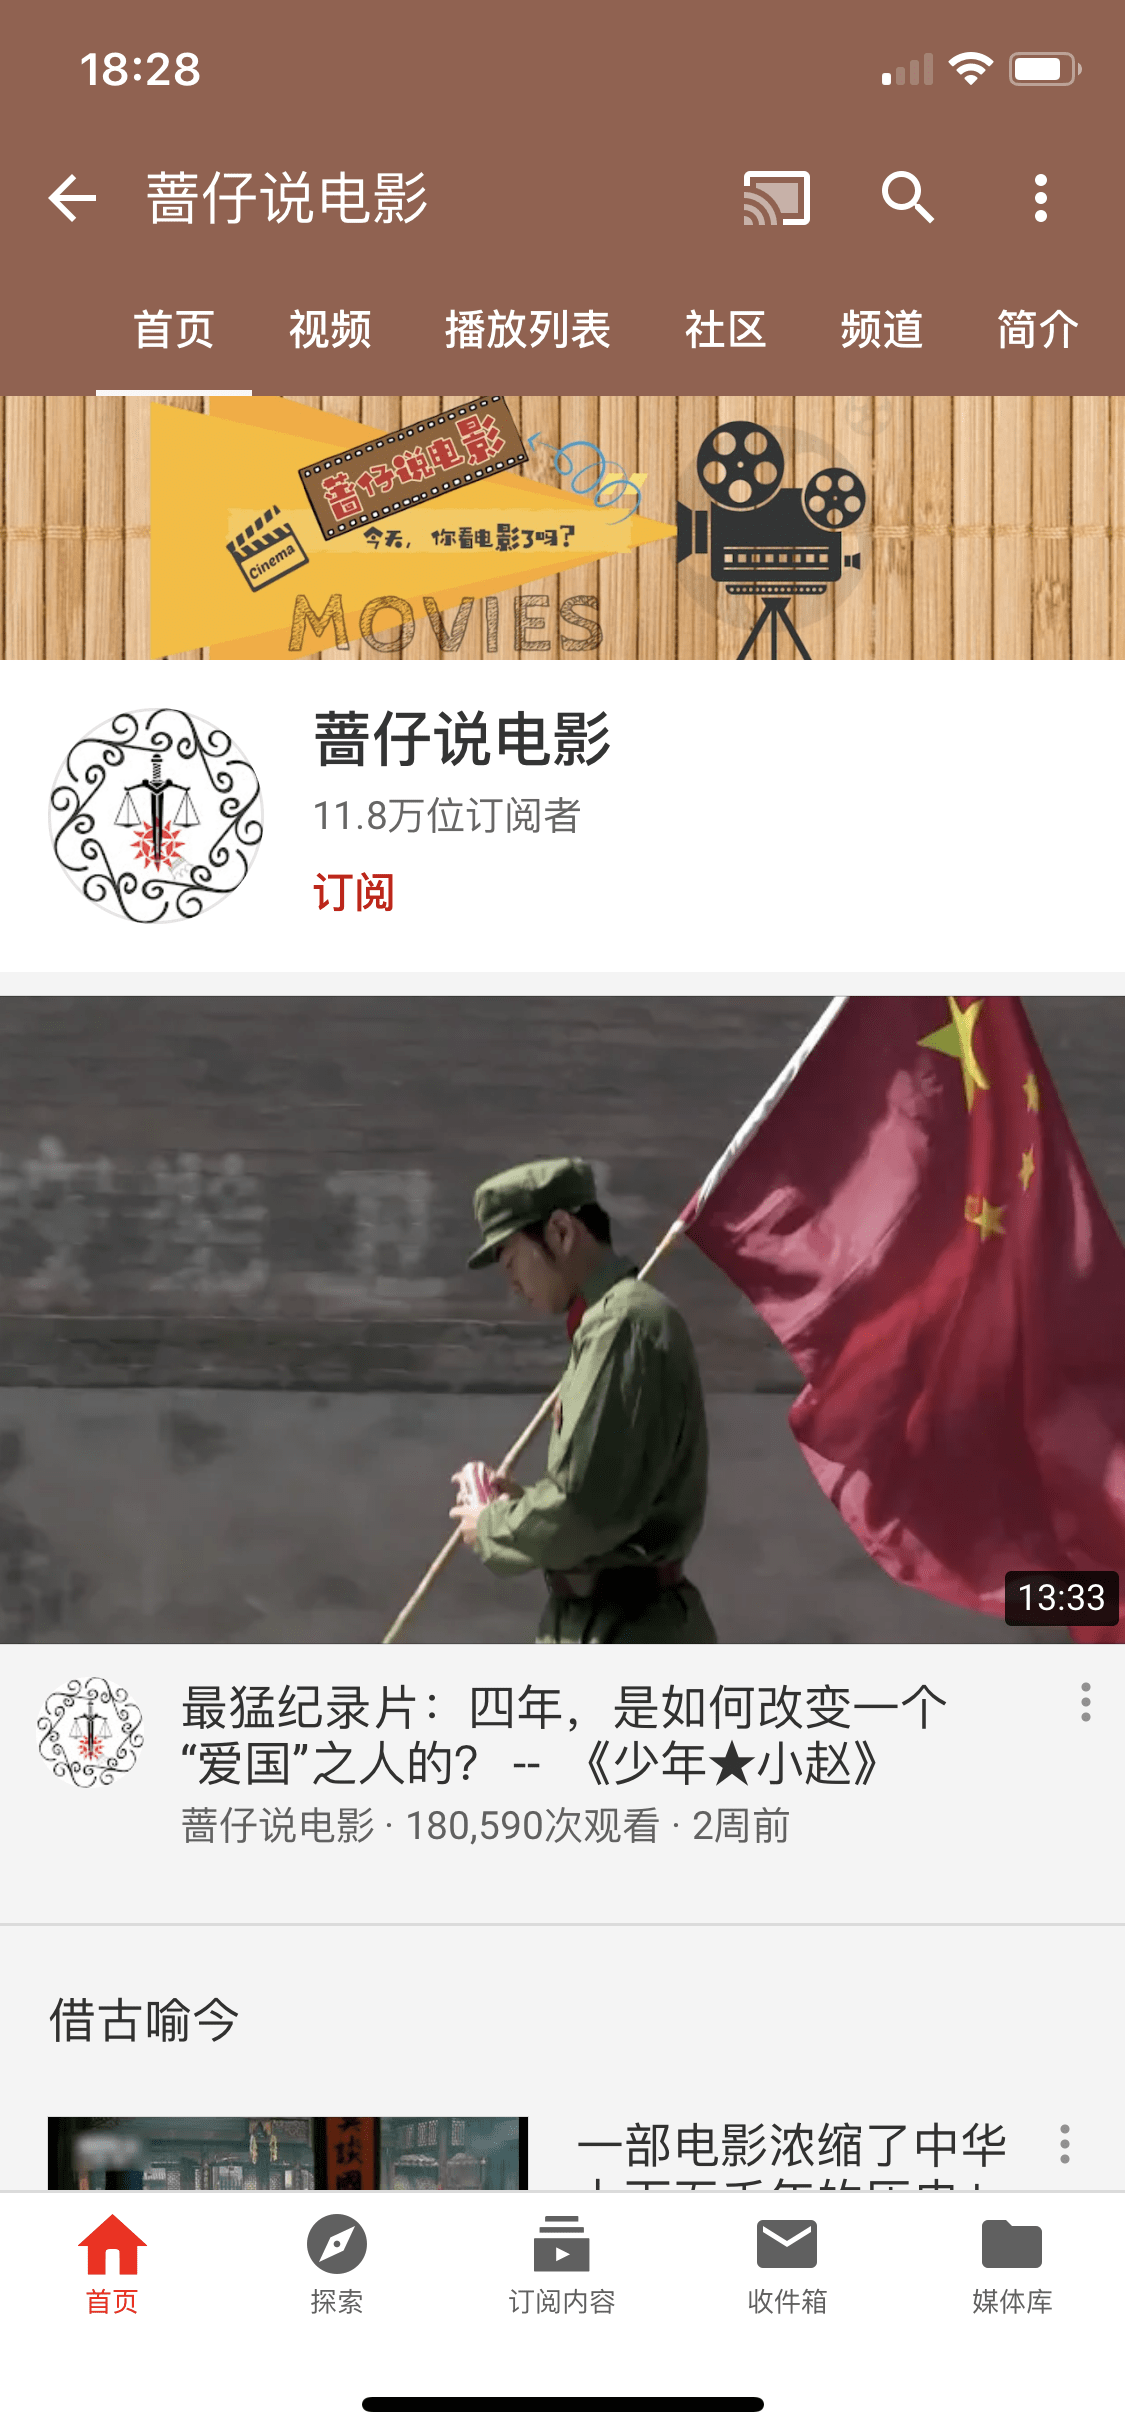 给大家推荐一个youtube电影频道 小范看台湾 Xiaofan